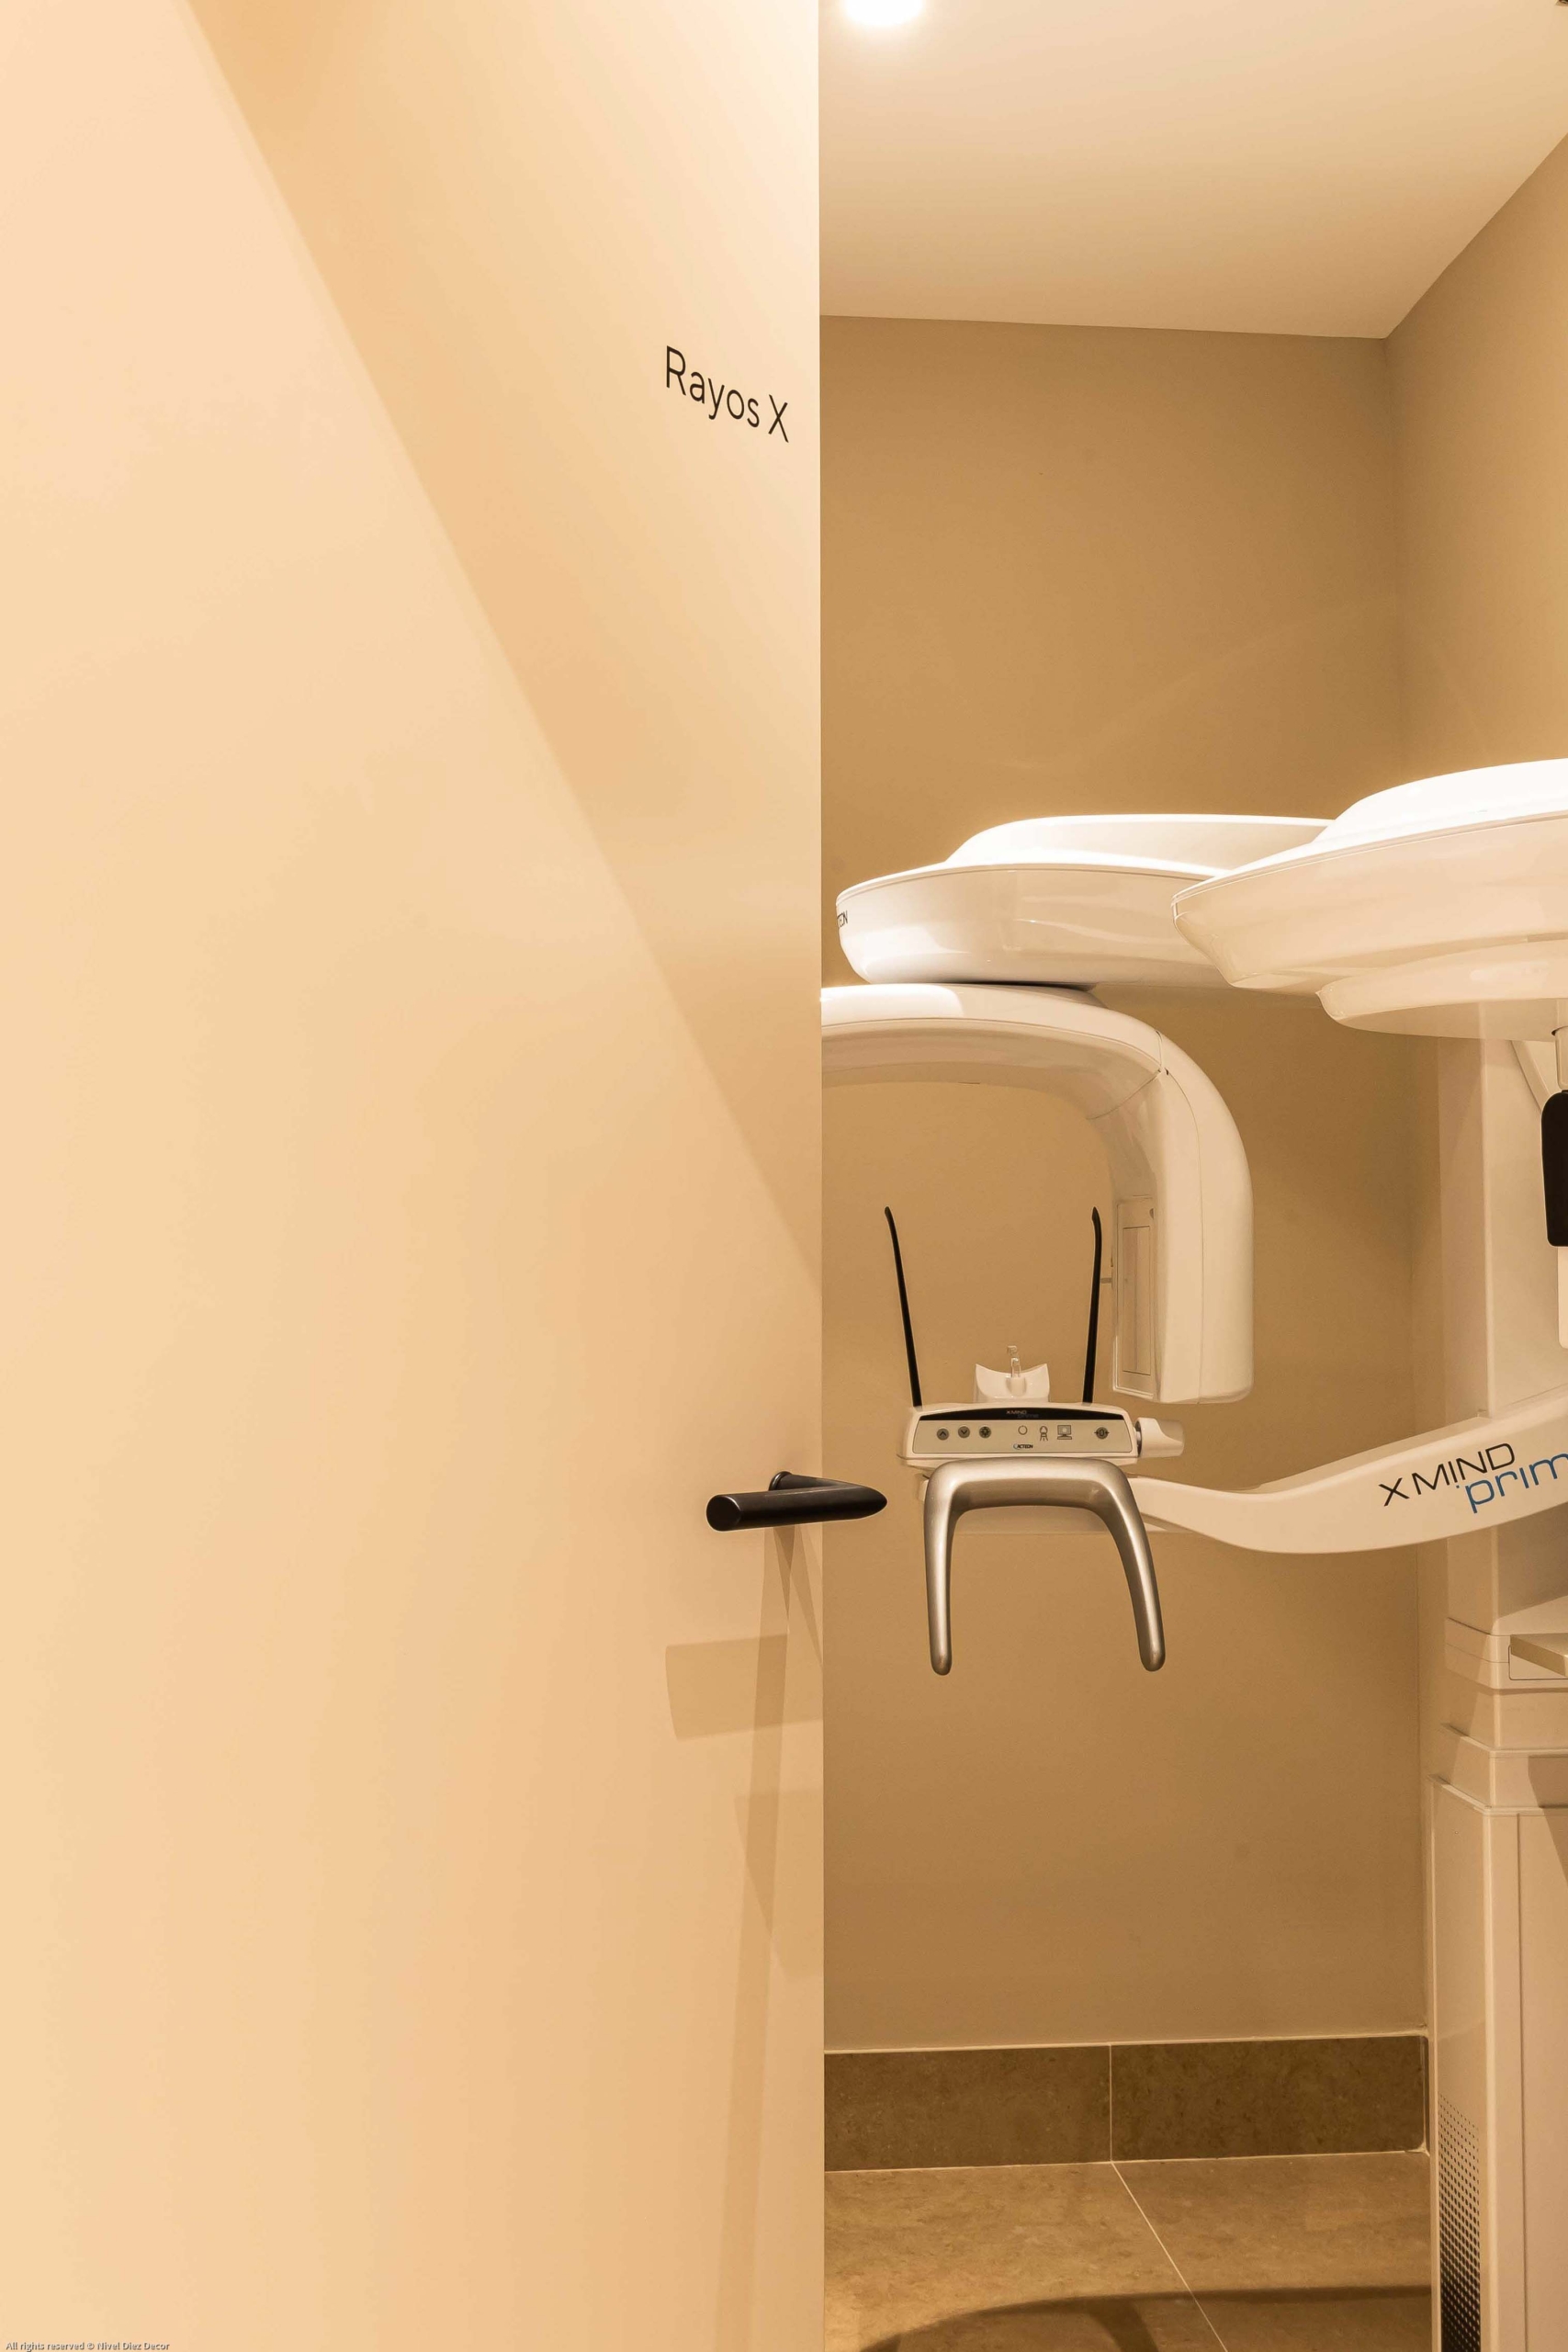 Mobiliario protesico con puerta con nombre ¨Rayos X¨ con aparato dental